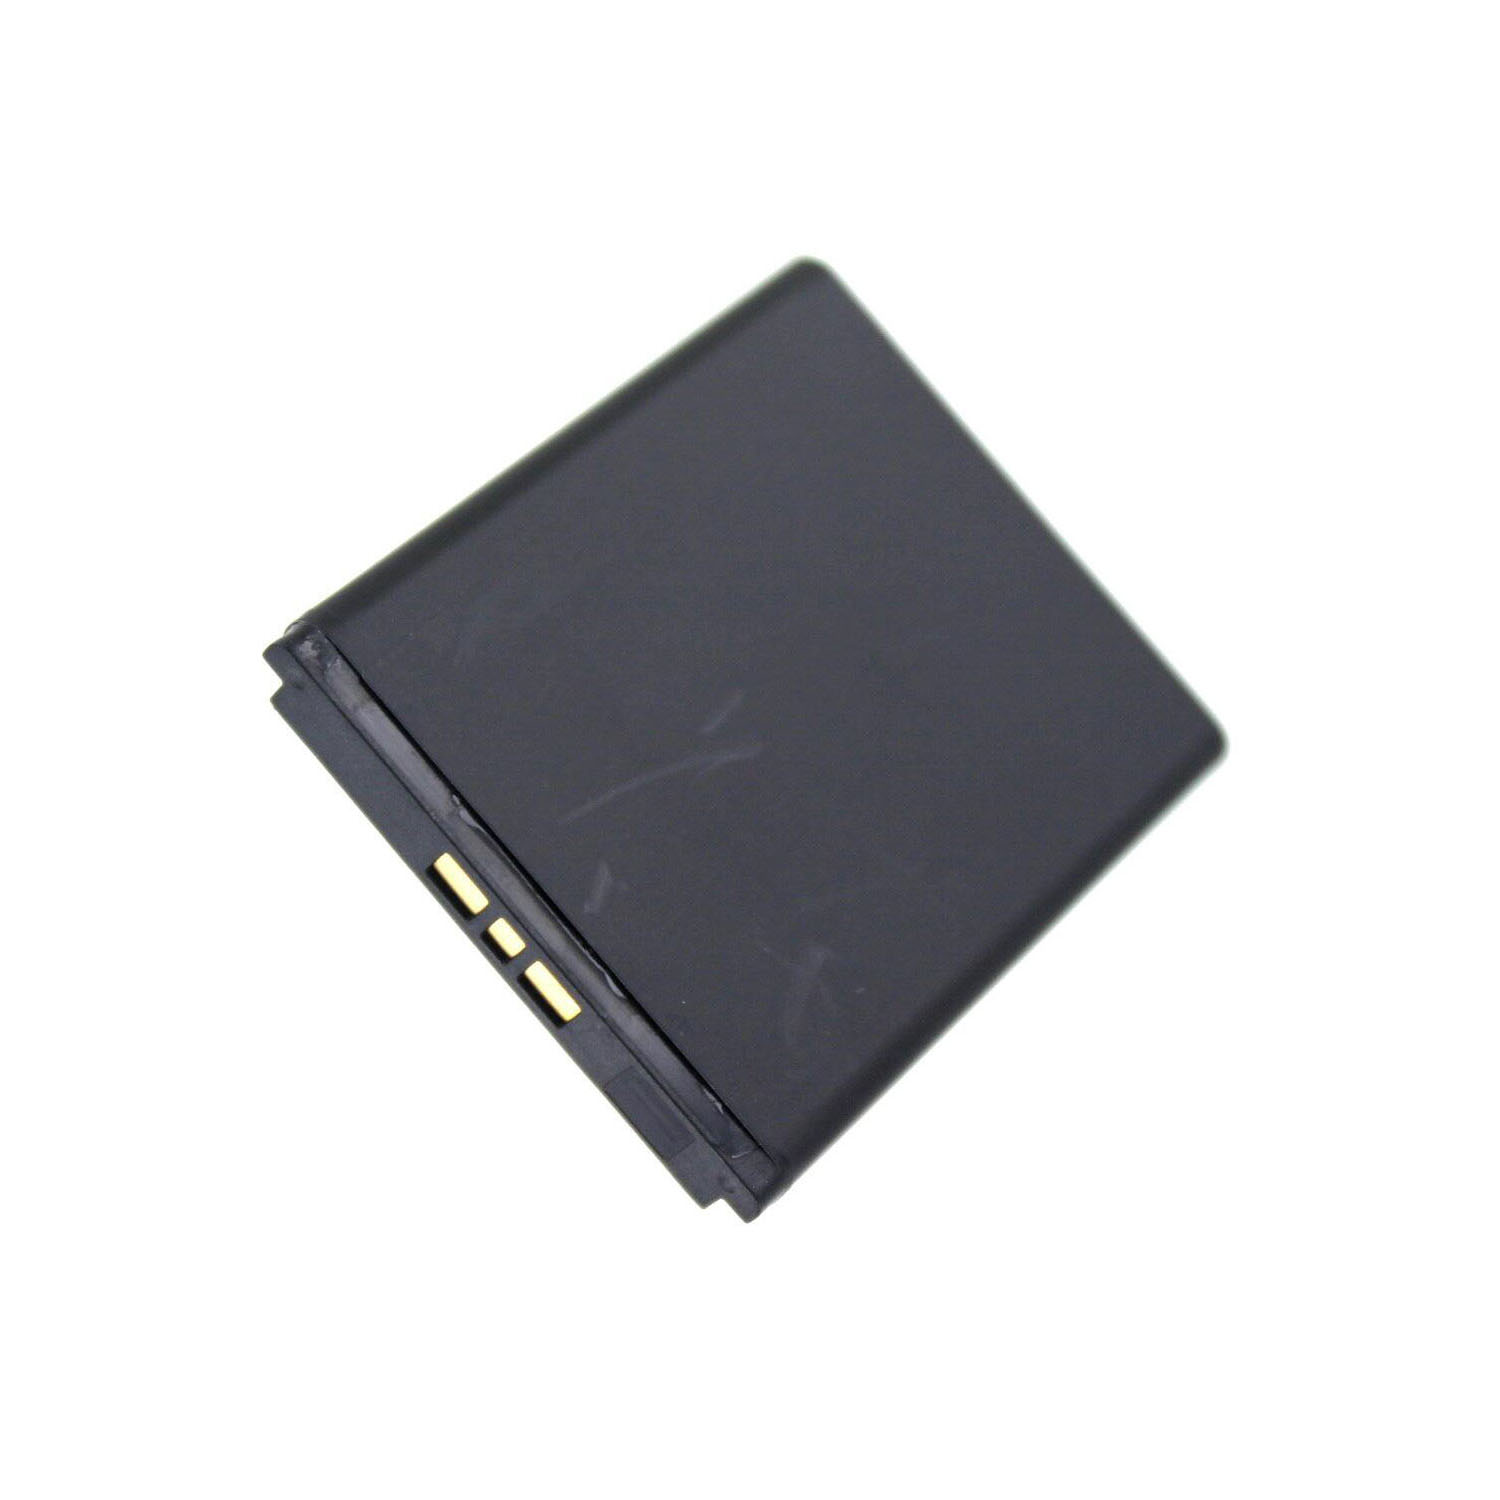 MOBILOTEC Akku kompatibel mit W110I|F305|G502|G700|G900 3.7 Ericsson Li-Ion, Sony Akku, mAh Volt, 860 Li-Ion